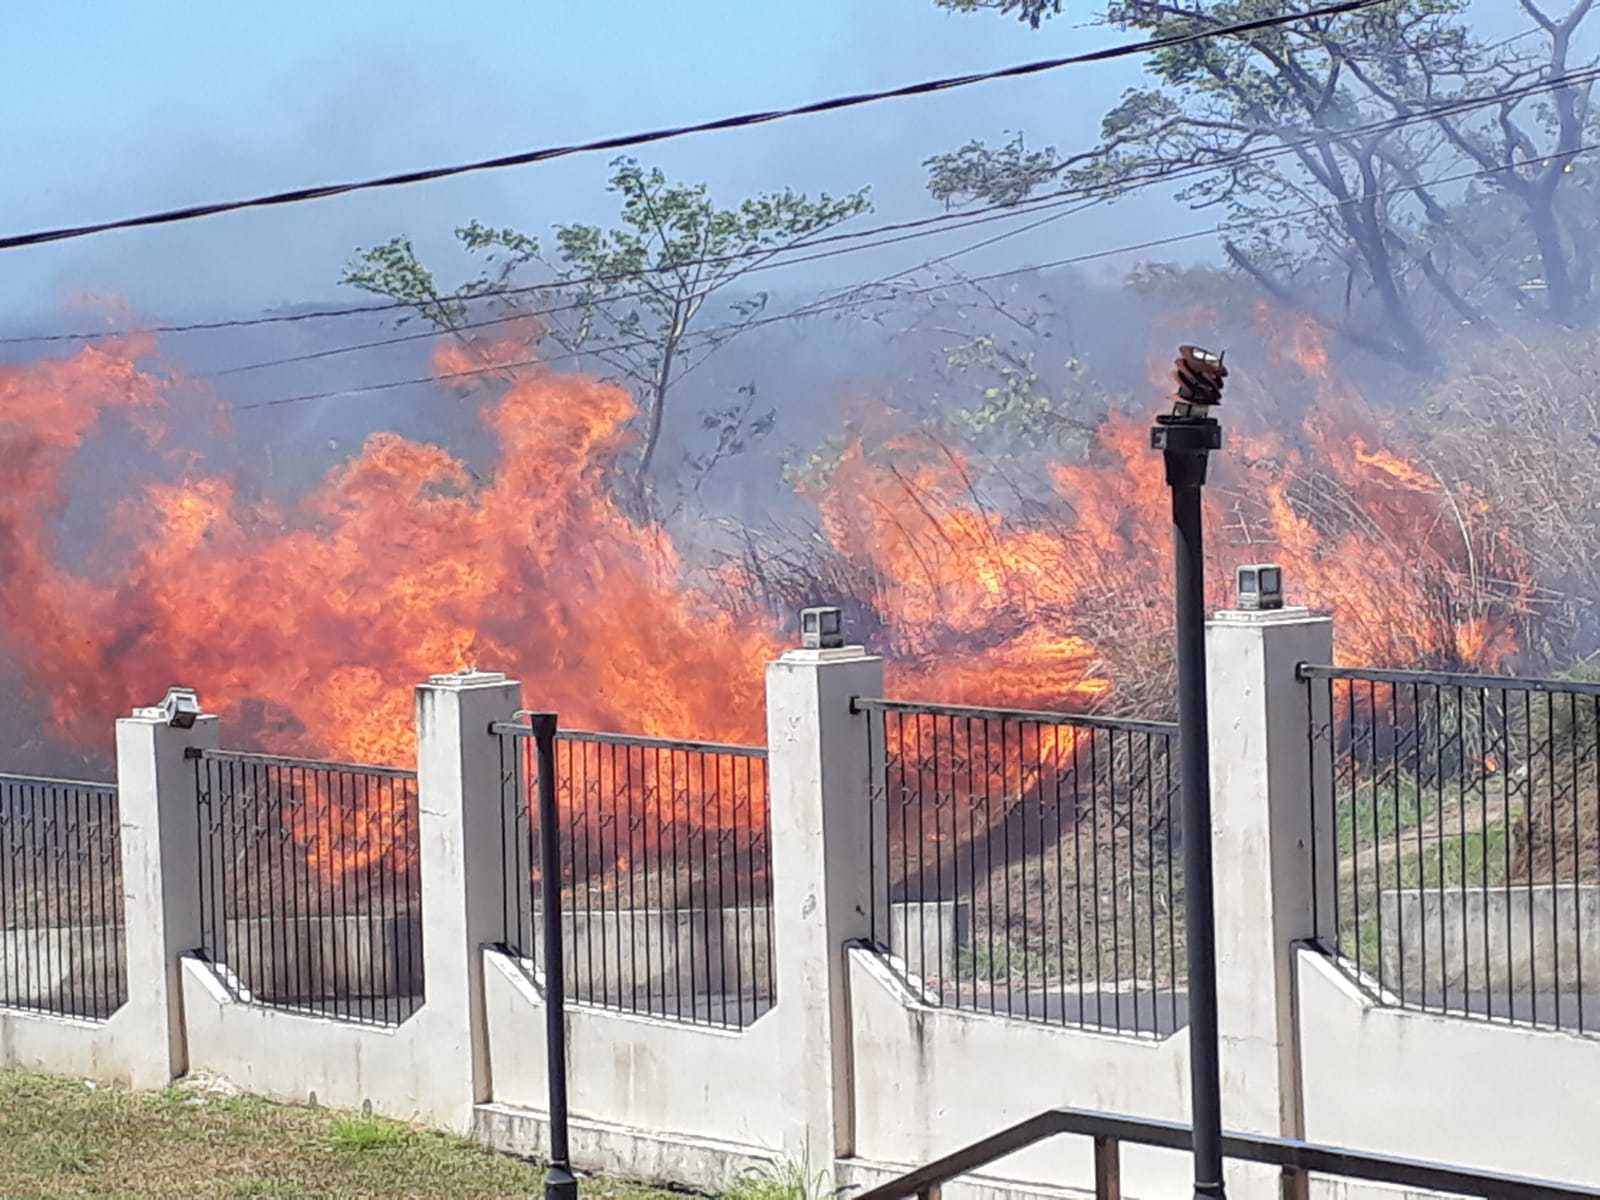 Bush Fire Reported Near the Dominica State College